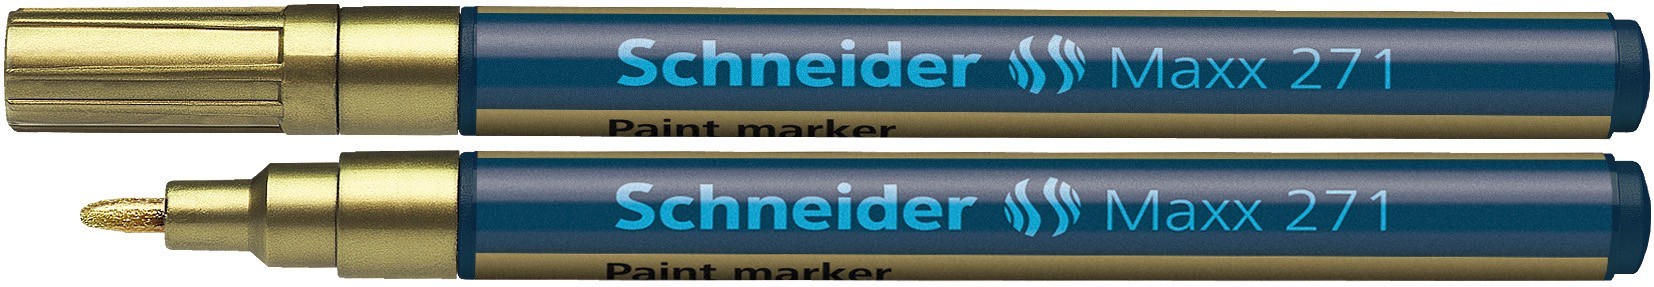 Marker cu vopsea SCHNEIDER Maxx 271, varf rotund 1-2mm - auriu